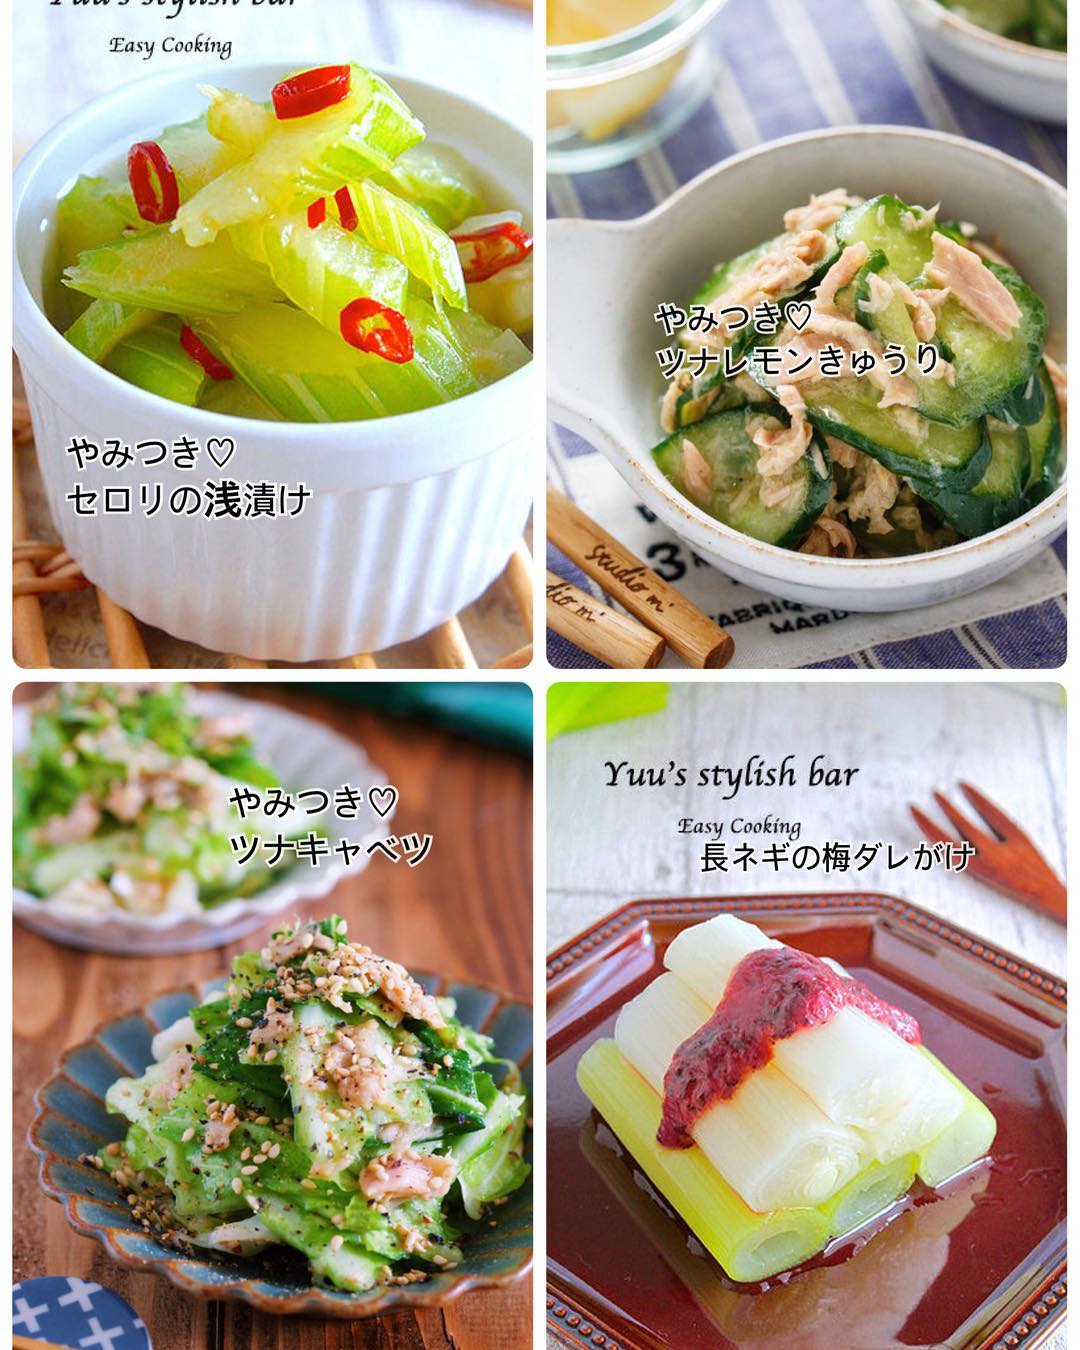 Yuu 胃腸休めや風邪ひきさんに 胃にやさしい簡単おかず10選 昆布茶活用レシピまとめ ちょっとずつ暖かくなり 春はもうすぐそこっ Ciao Nihon